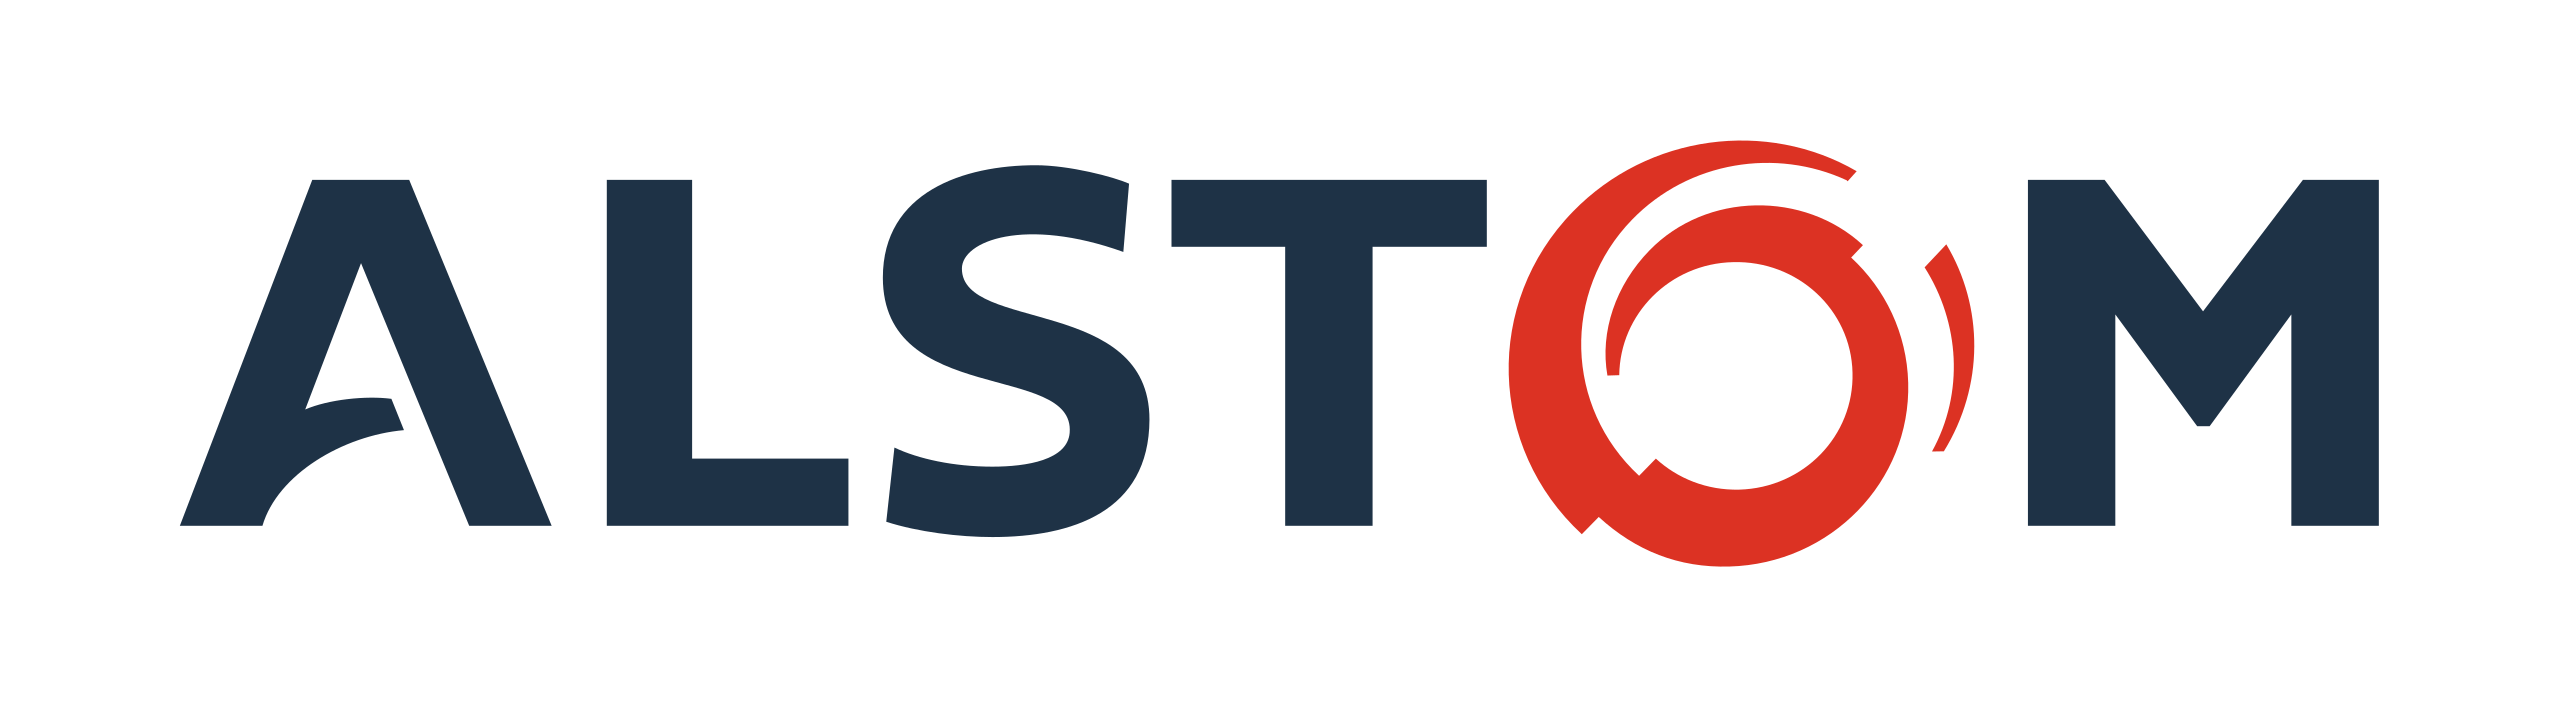 ESTICE - Entreprise & Alumni - Entreprises partenaires - logo Alstom